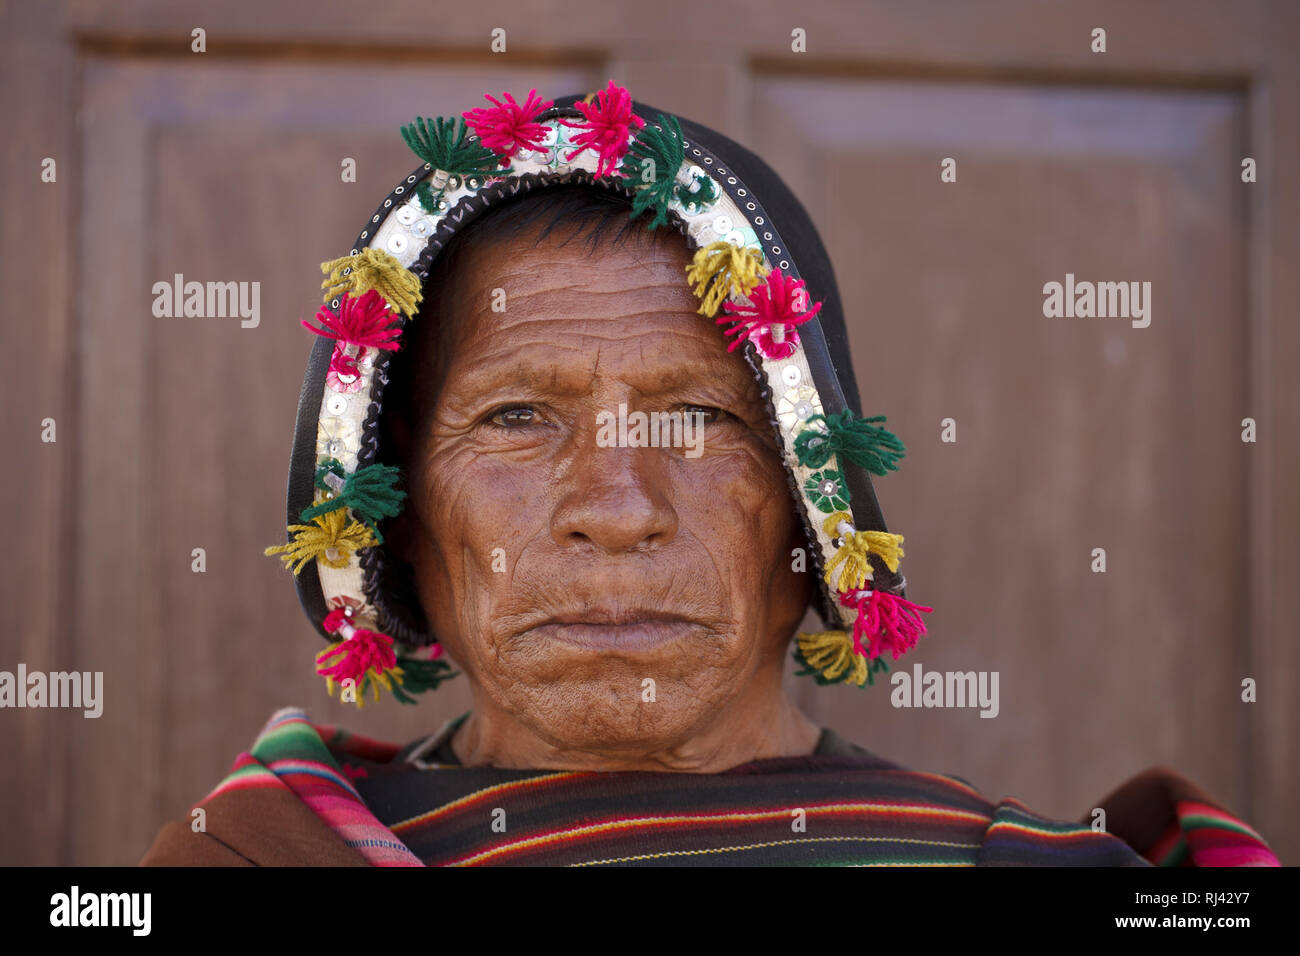 Bolivien, Tarabuco, el quechua, el Tracht, Mann Foto de stock